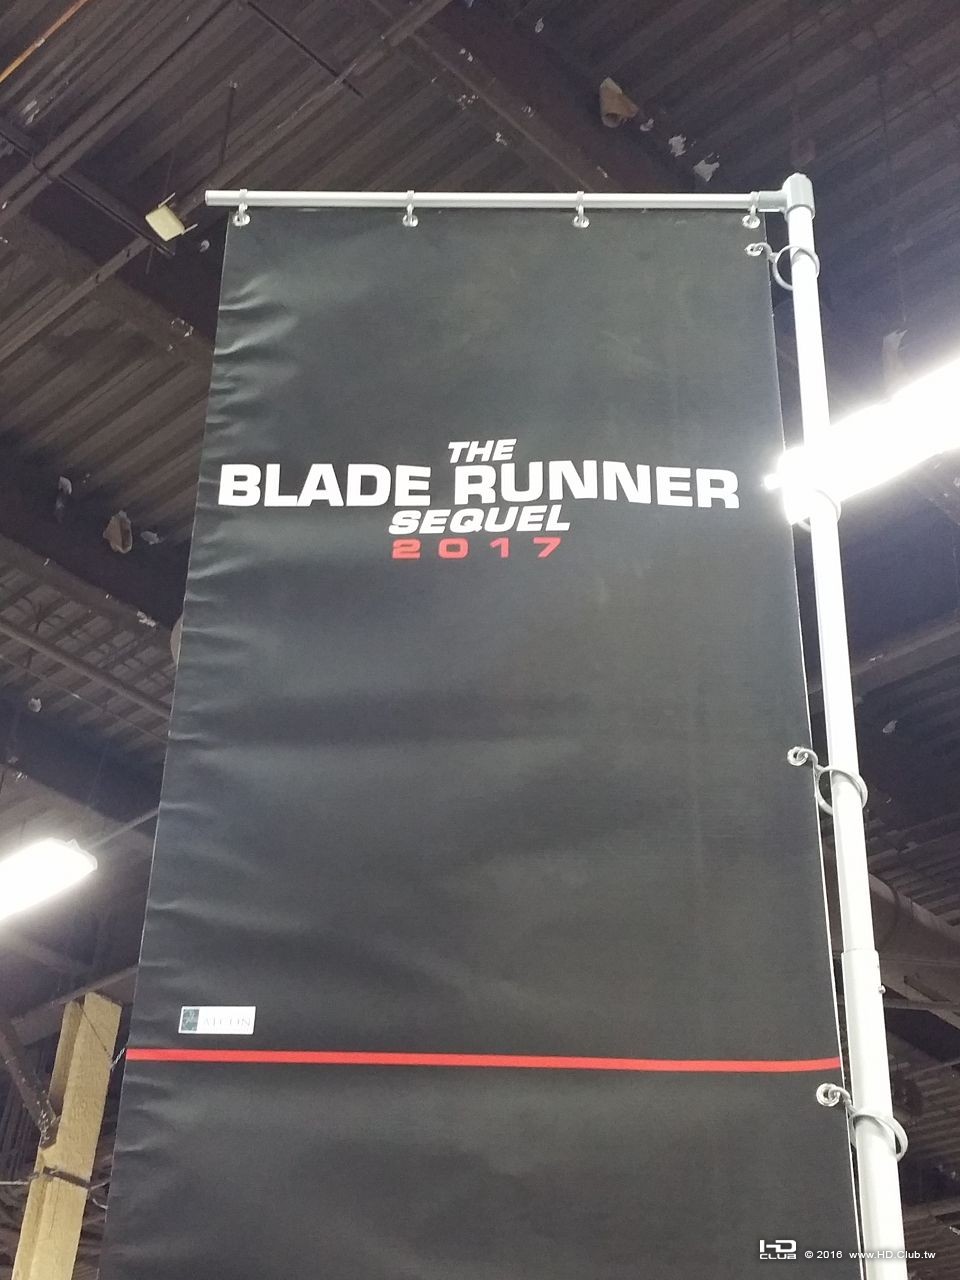 the-blade-runner-sequel-poster-e1466522043649.jpg